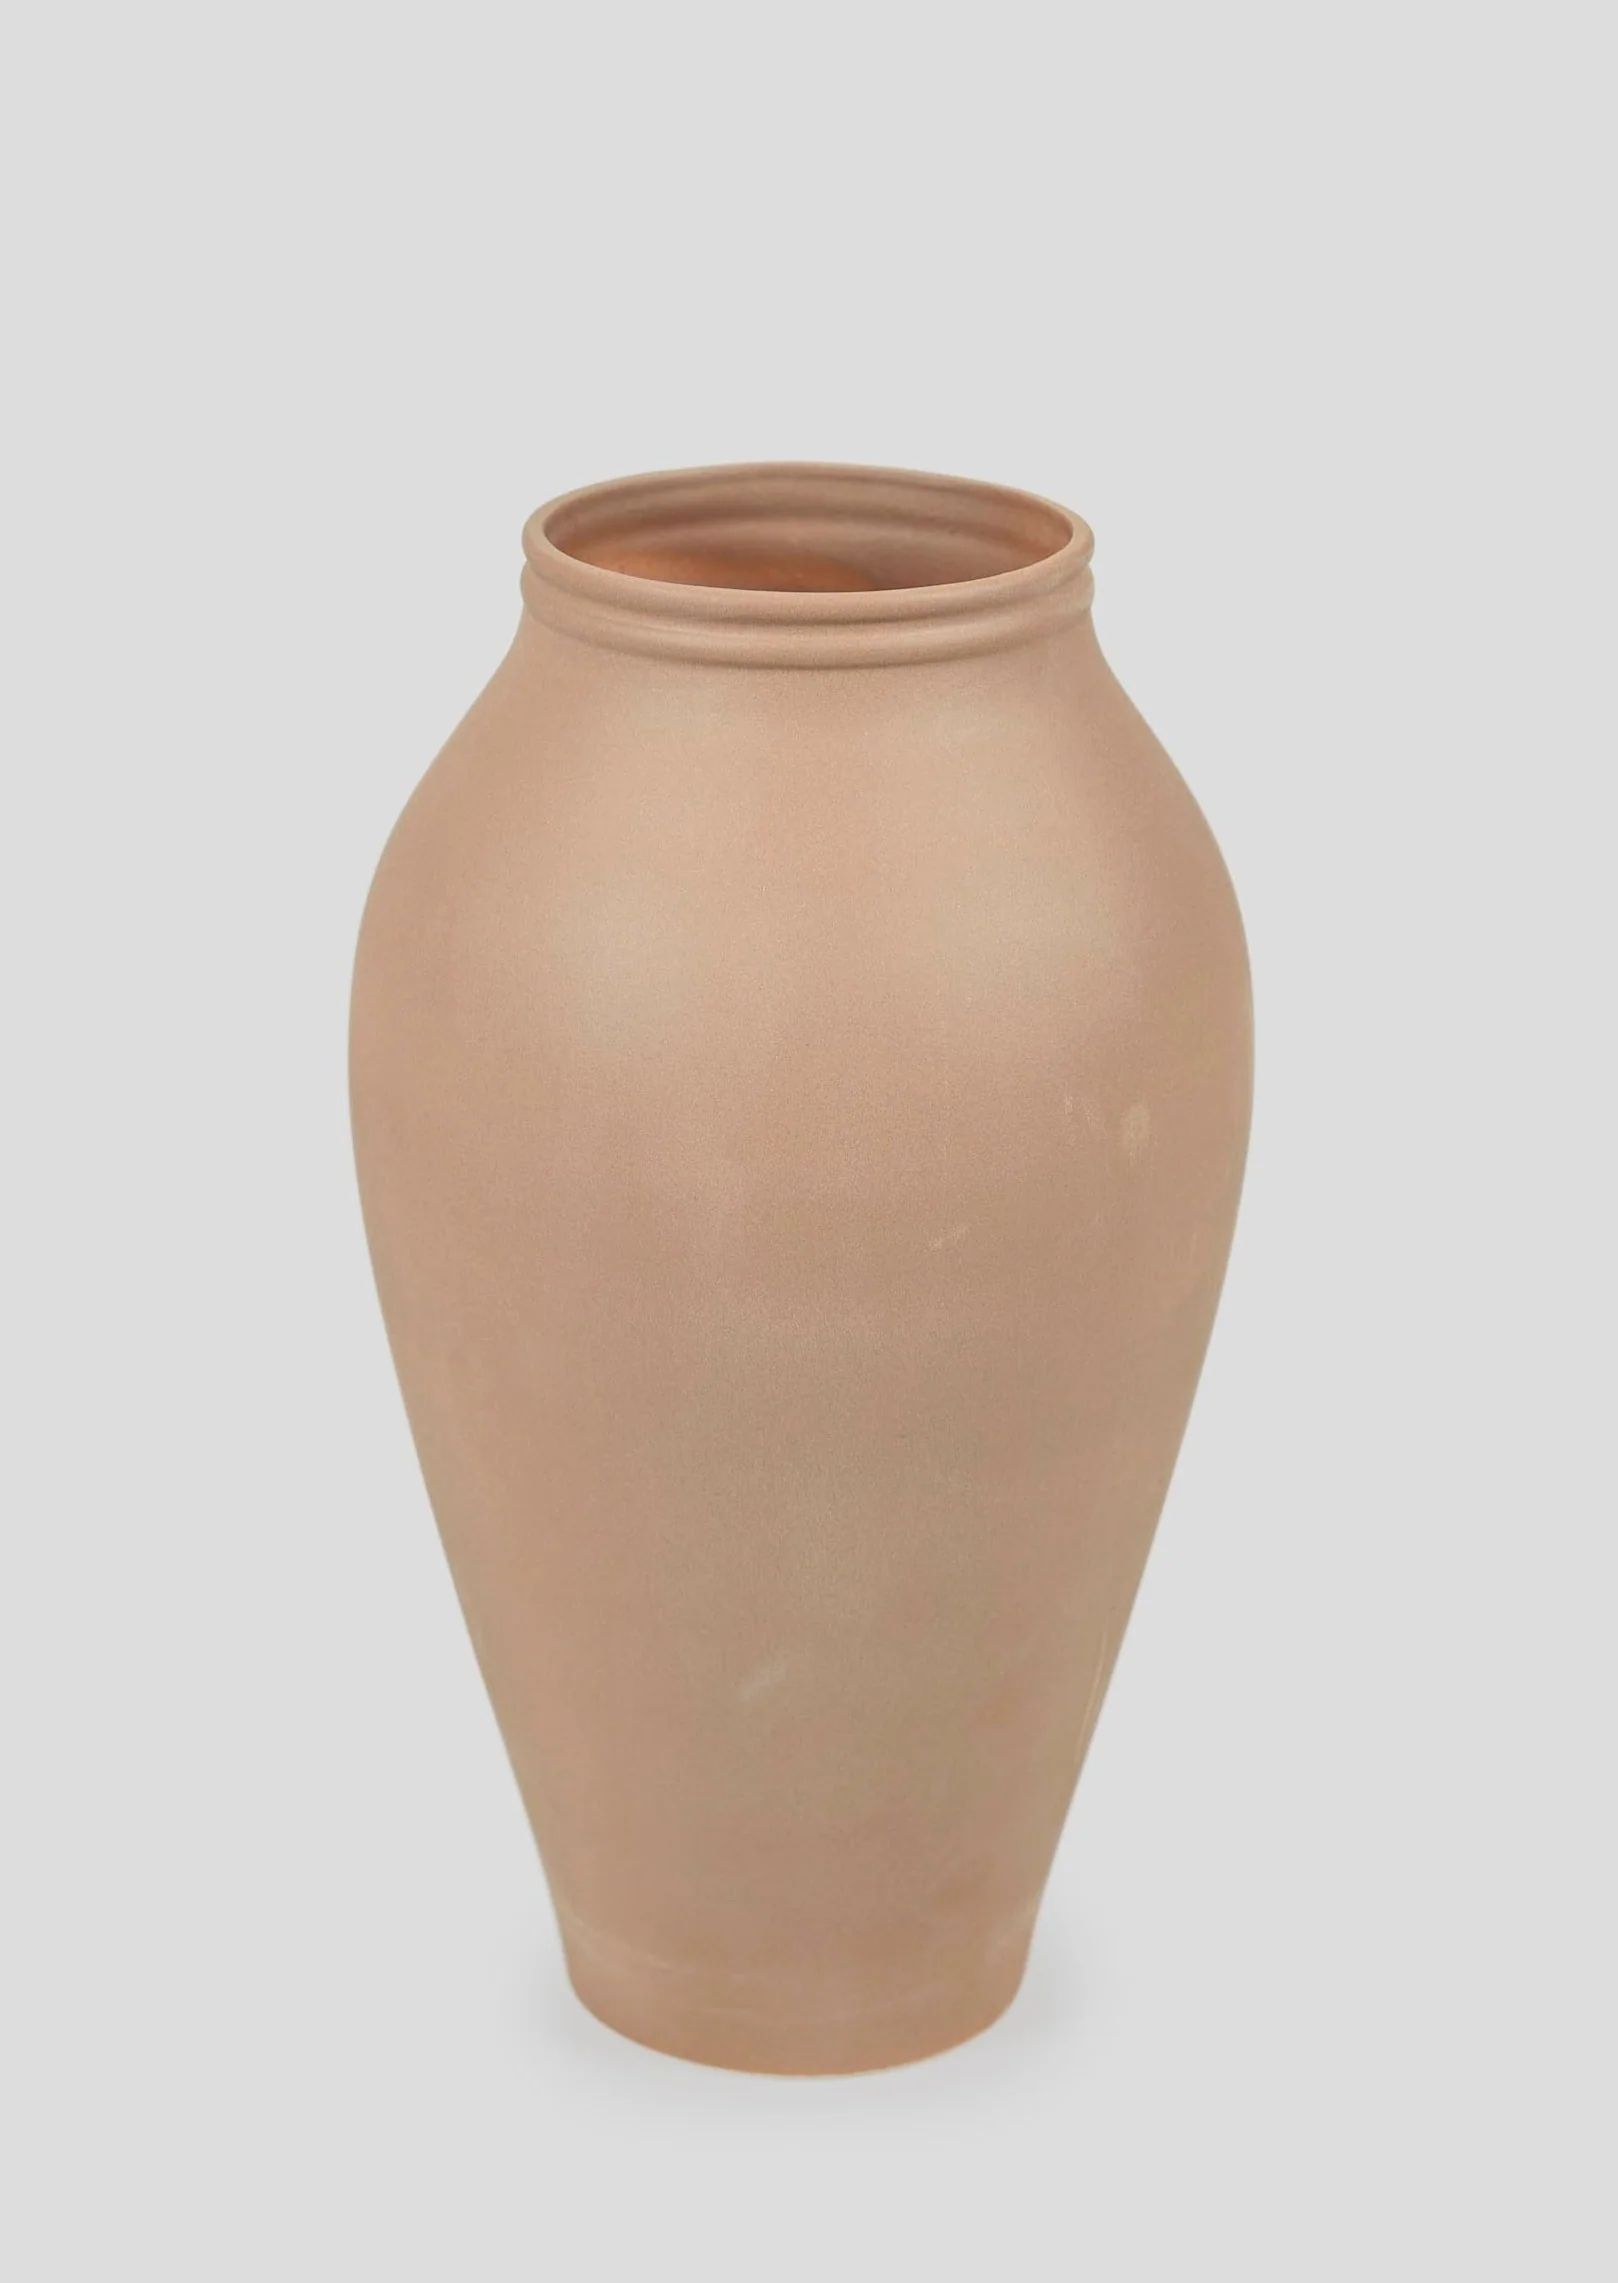 Terracotta Ceramic Vase | Best Tall Vases at Afloral.com | Afloral